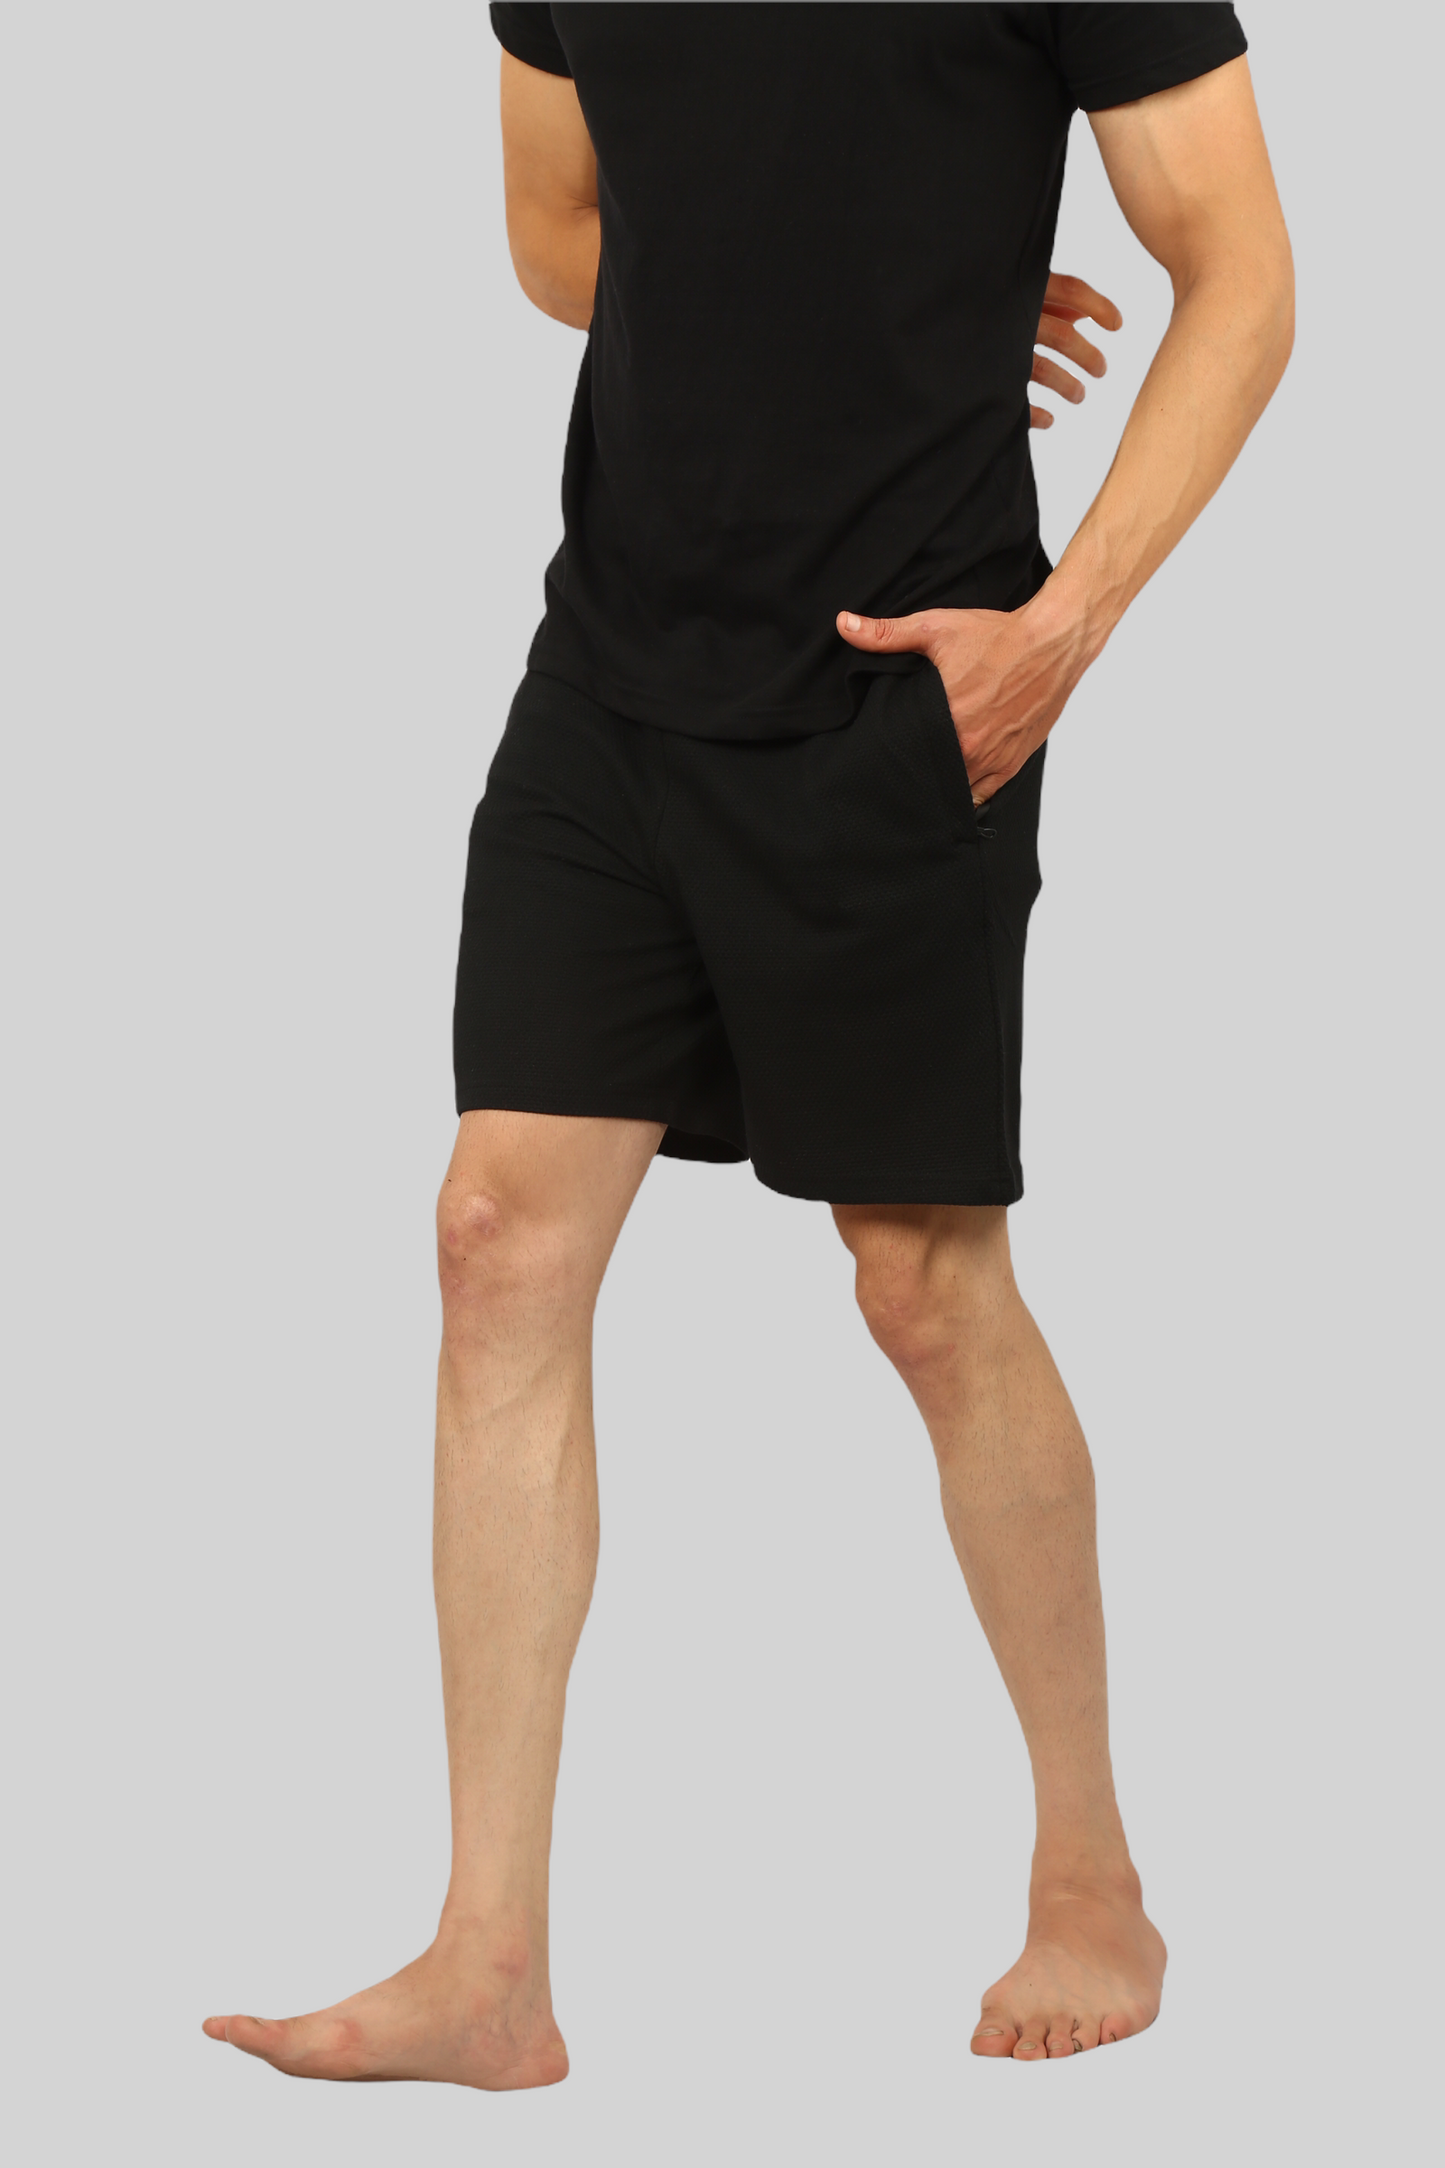 Black casual premium popcorn shorts for men